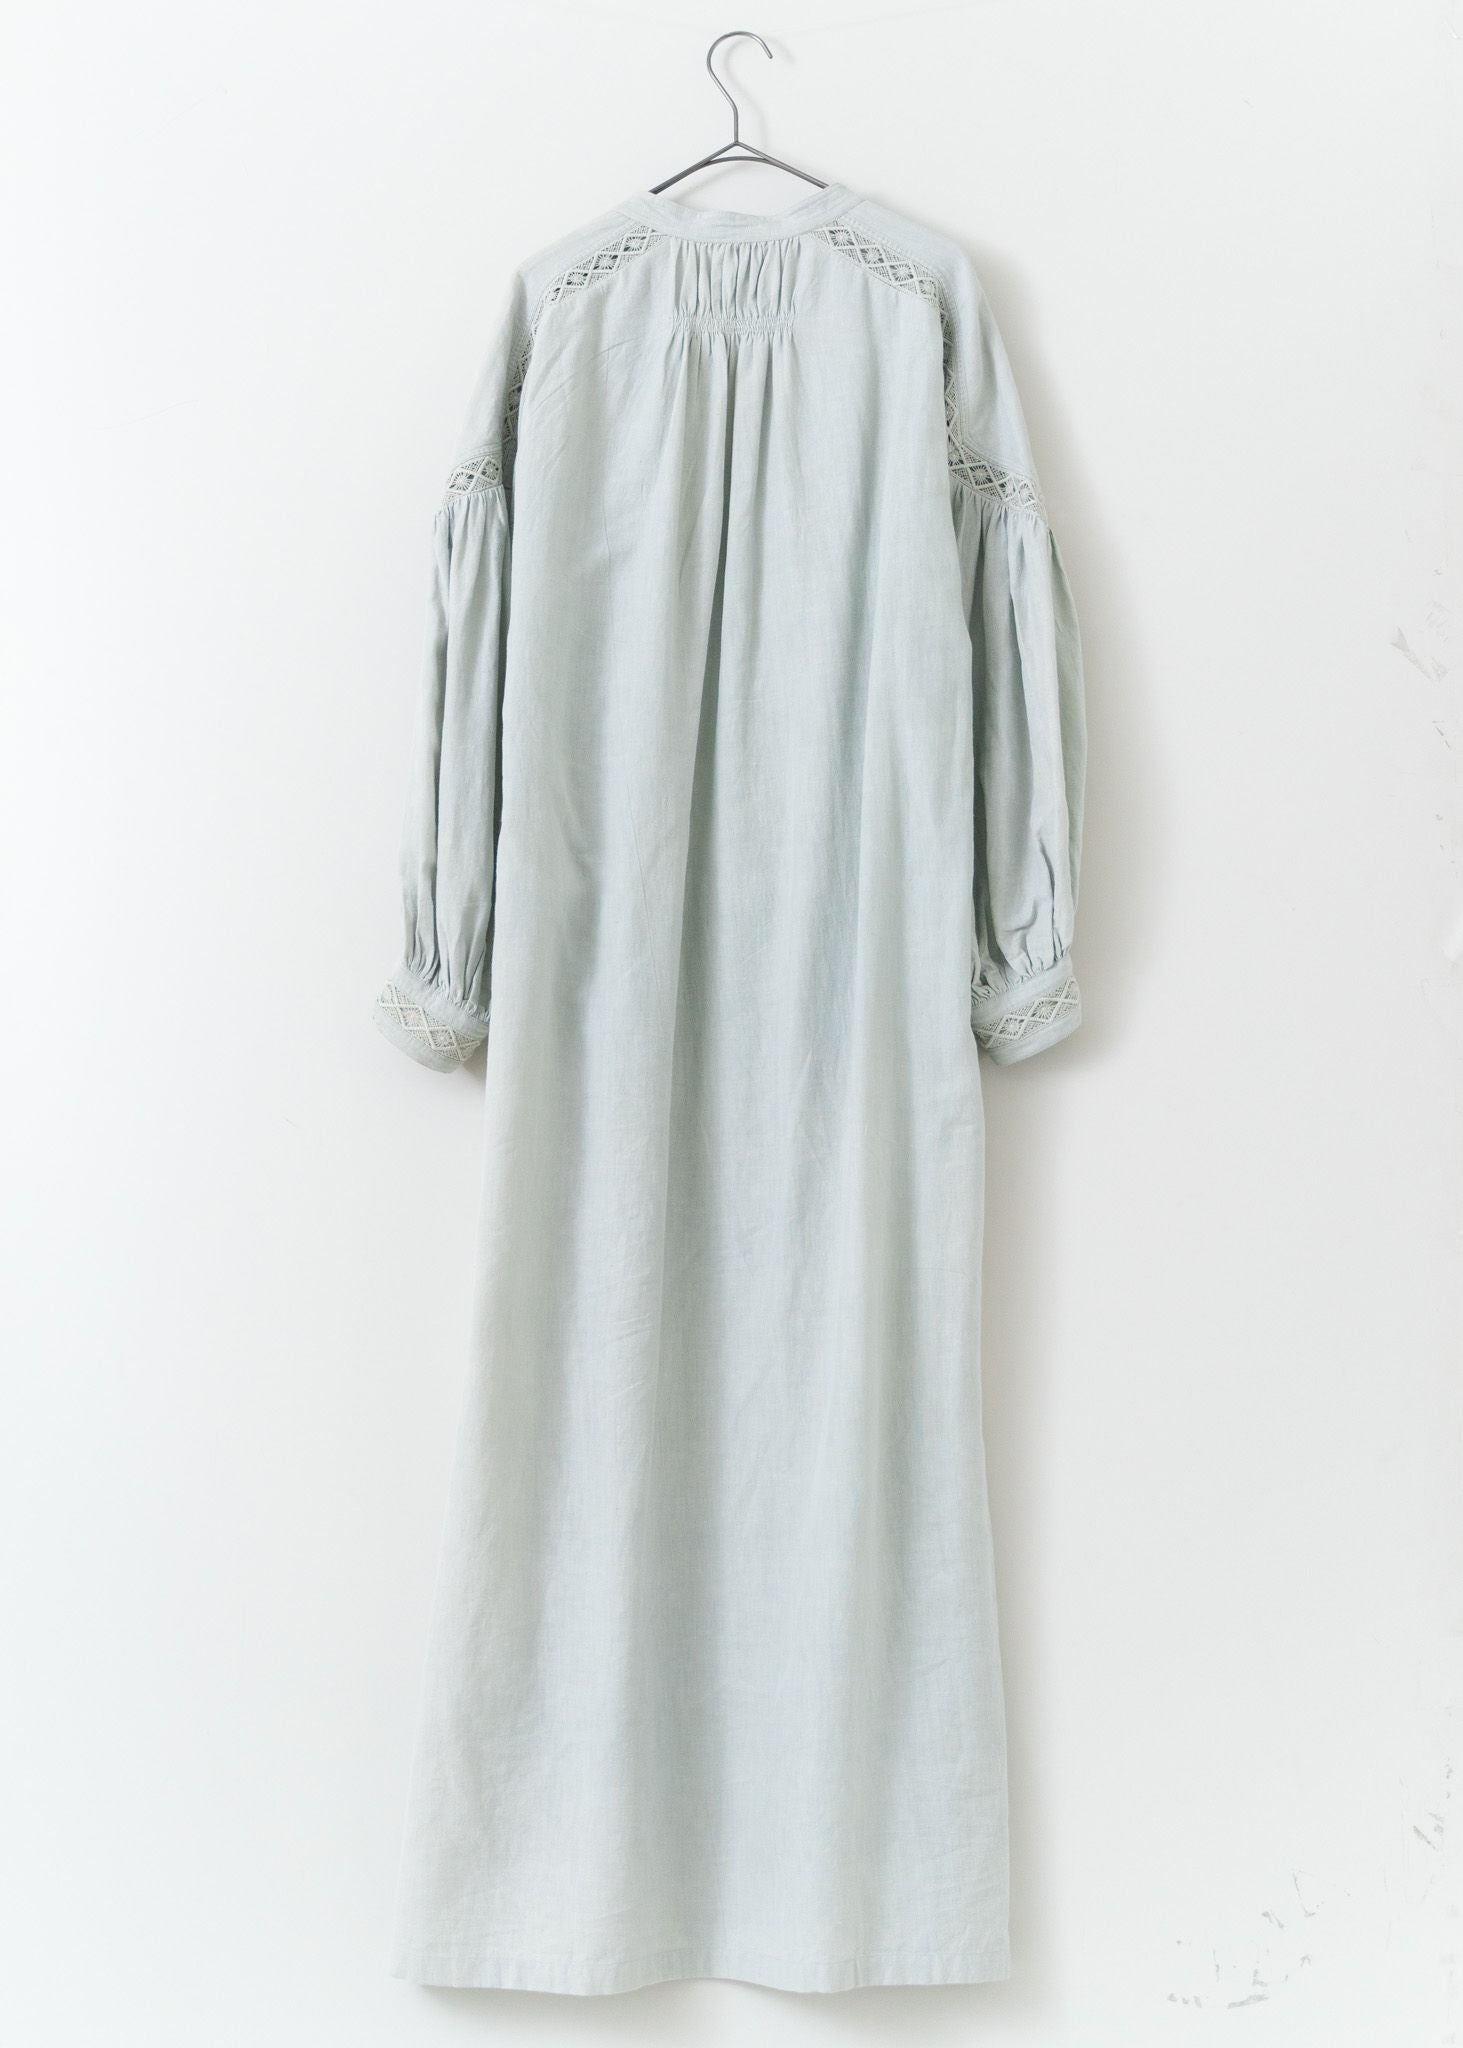 Cotton Linen Lace Dress